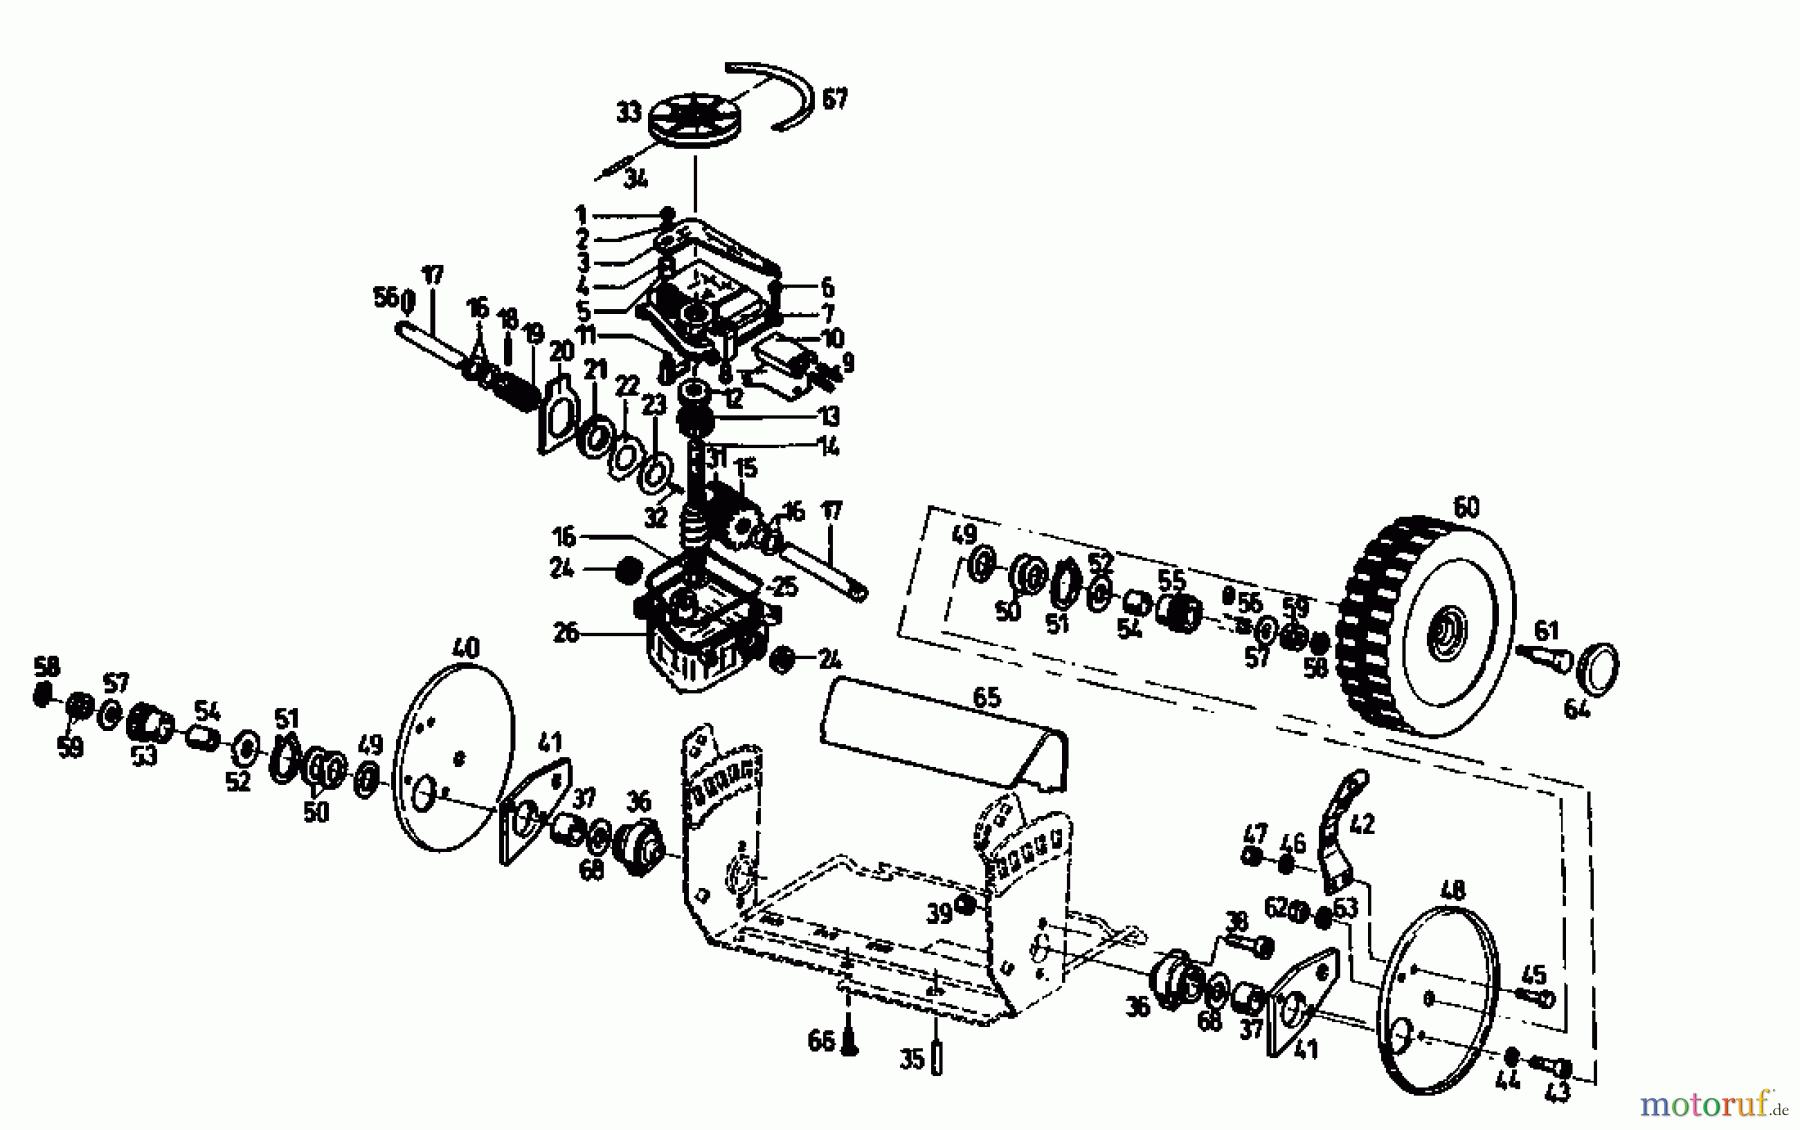  Gutbrod Petrol mower self propelled TURBO HBSR 04011.03  (1993) Gearbox